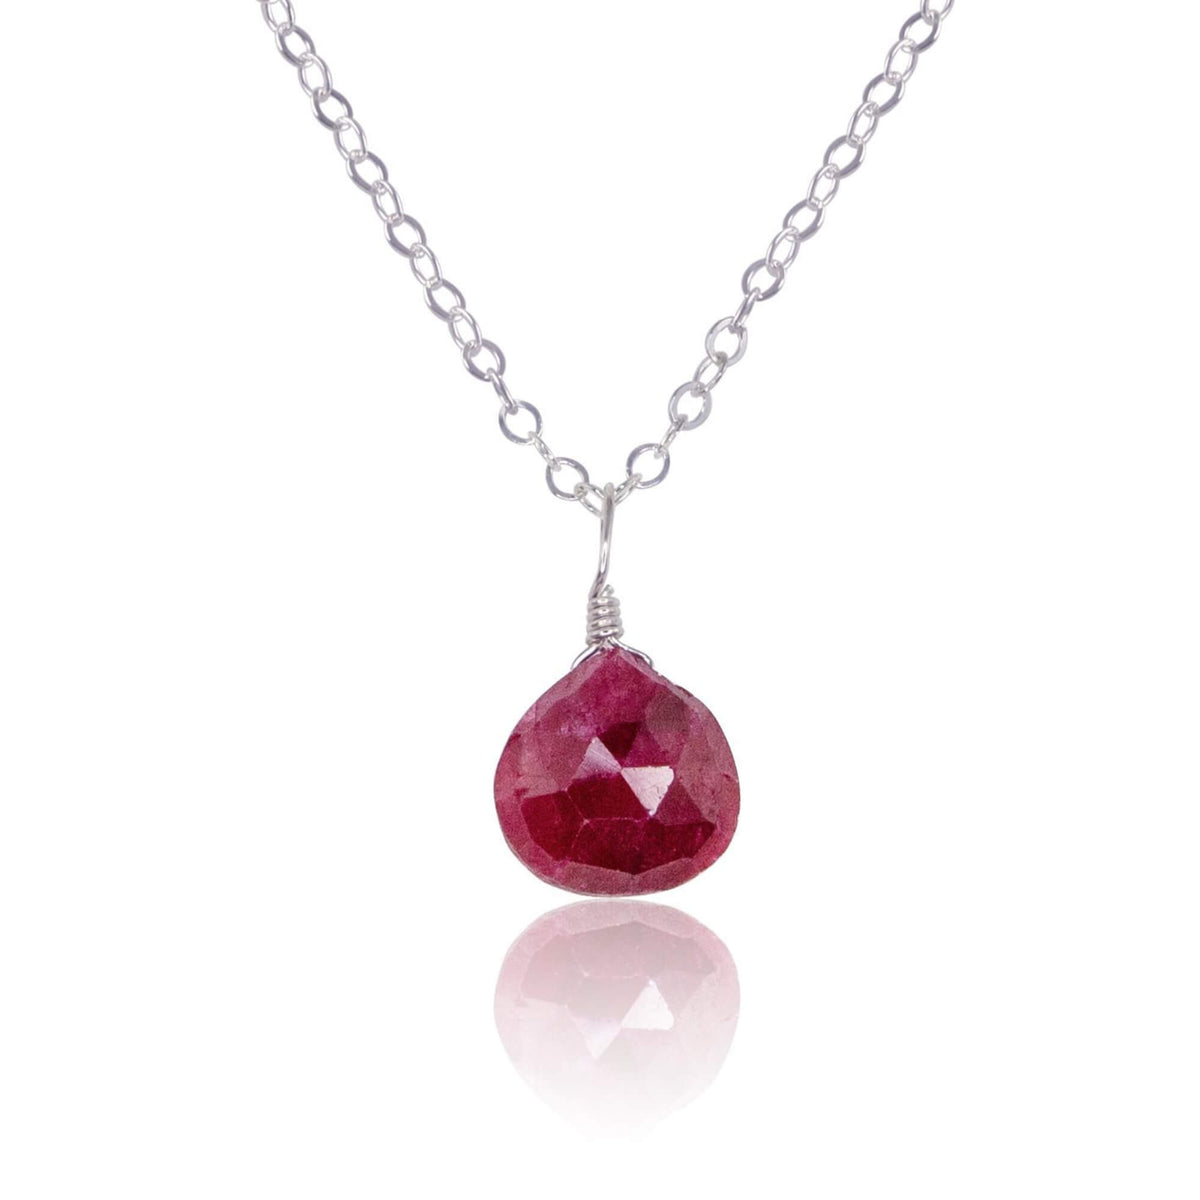 Teardrop Necklace - Ruby - Stainless Steel - Luna Tide Handmade Jewellery